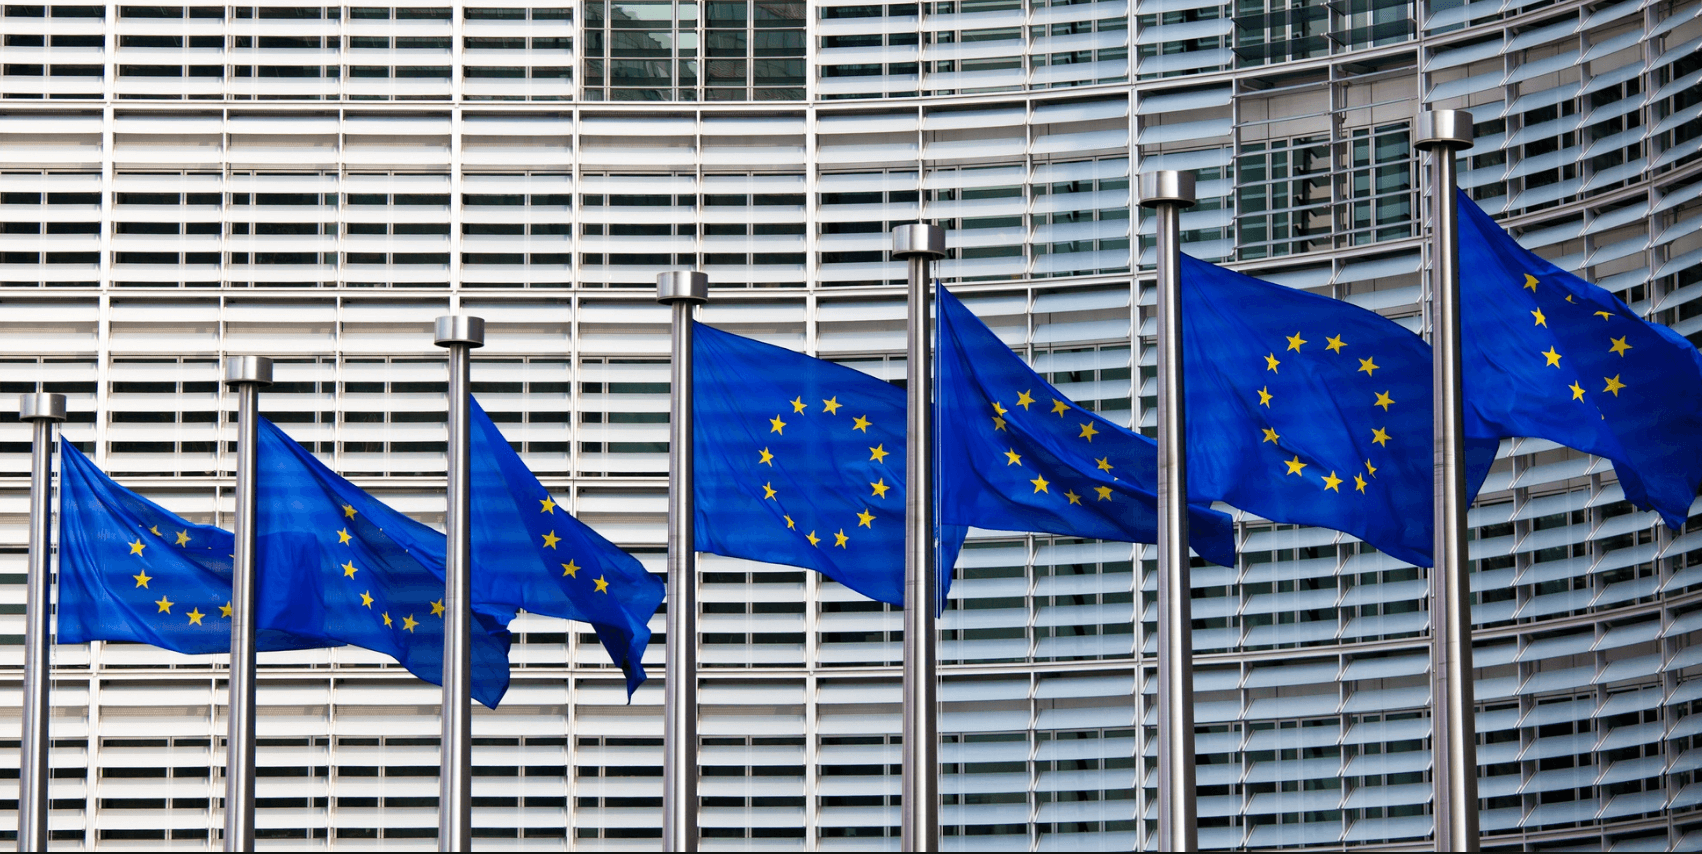 Європейська віза, на яку орієнтується Європейська Комісія